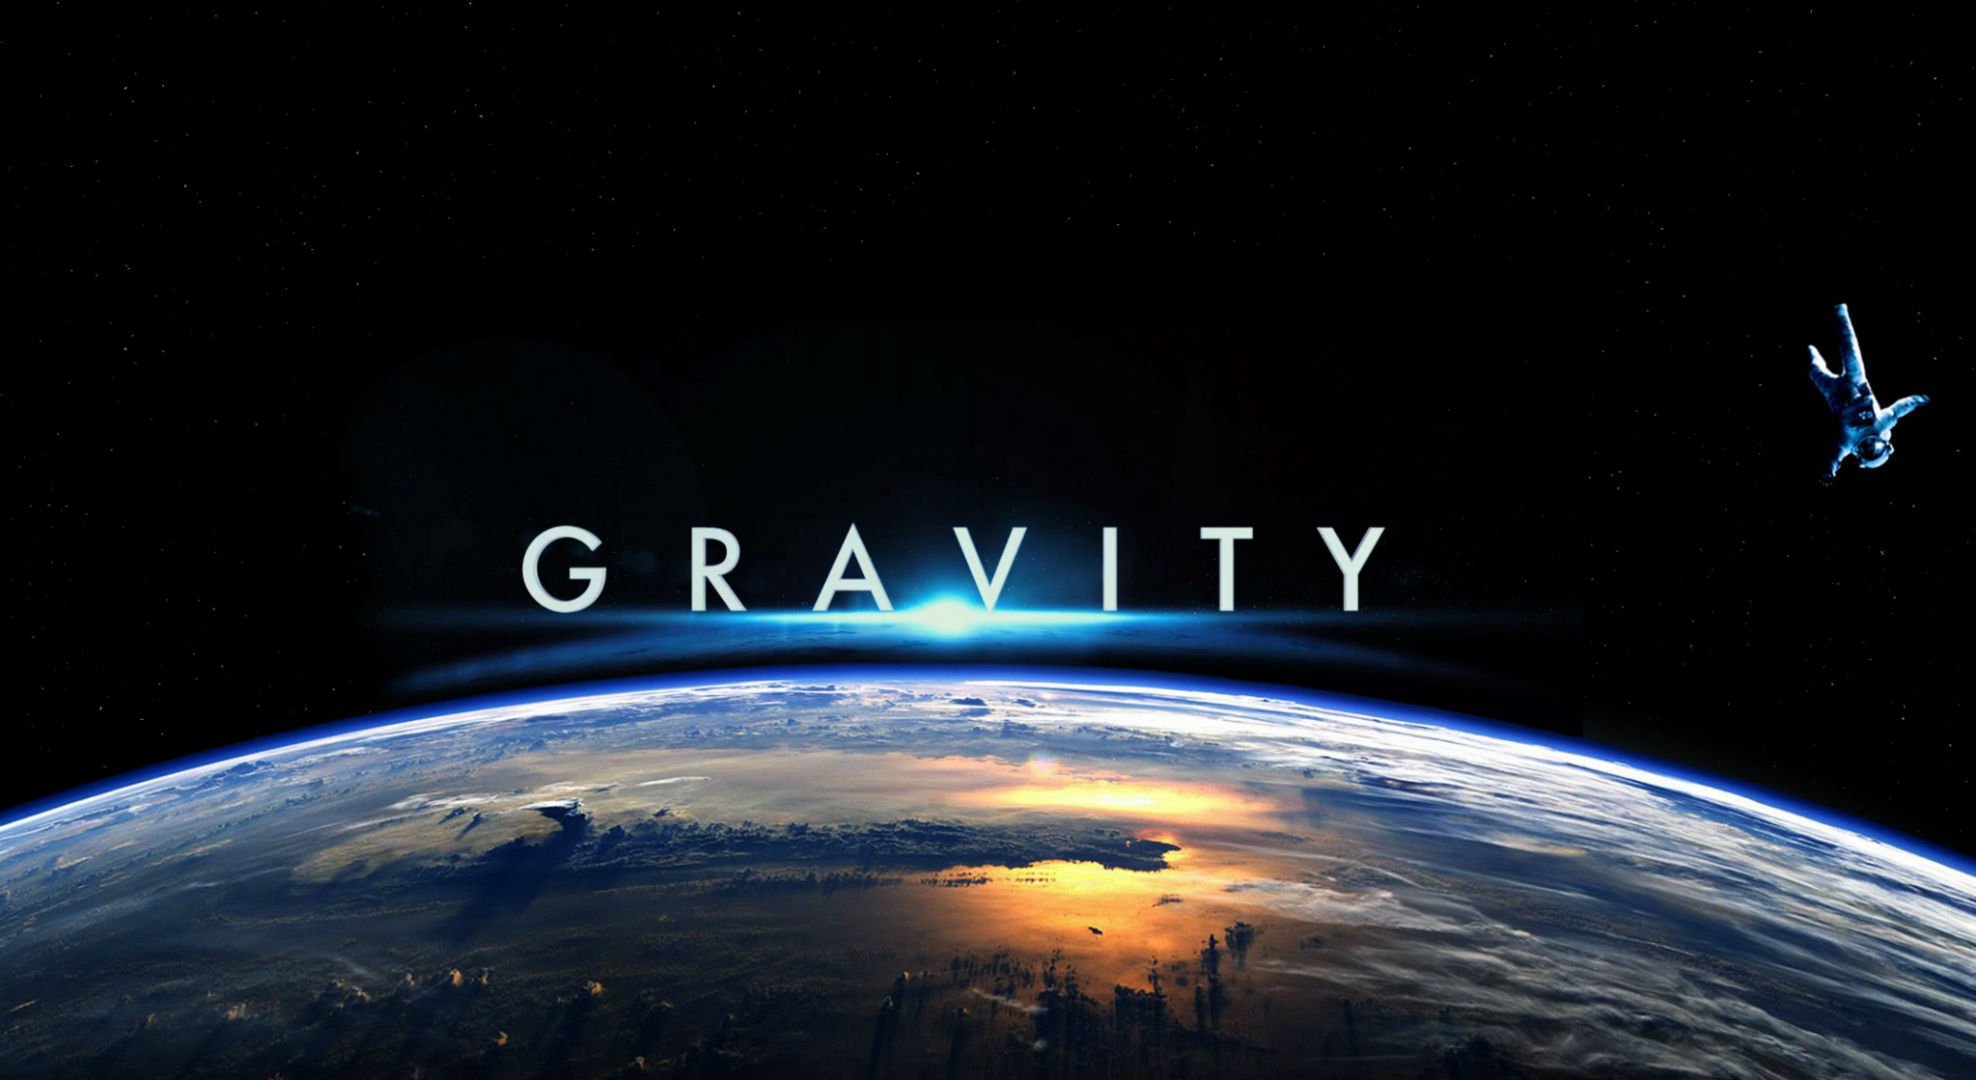 Today's movie: Gravity